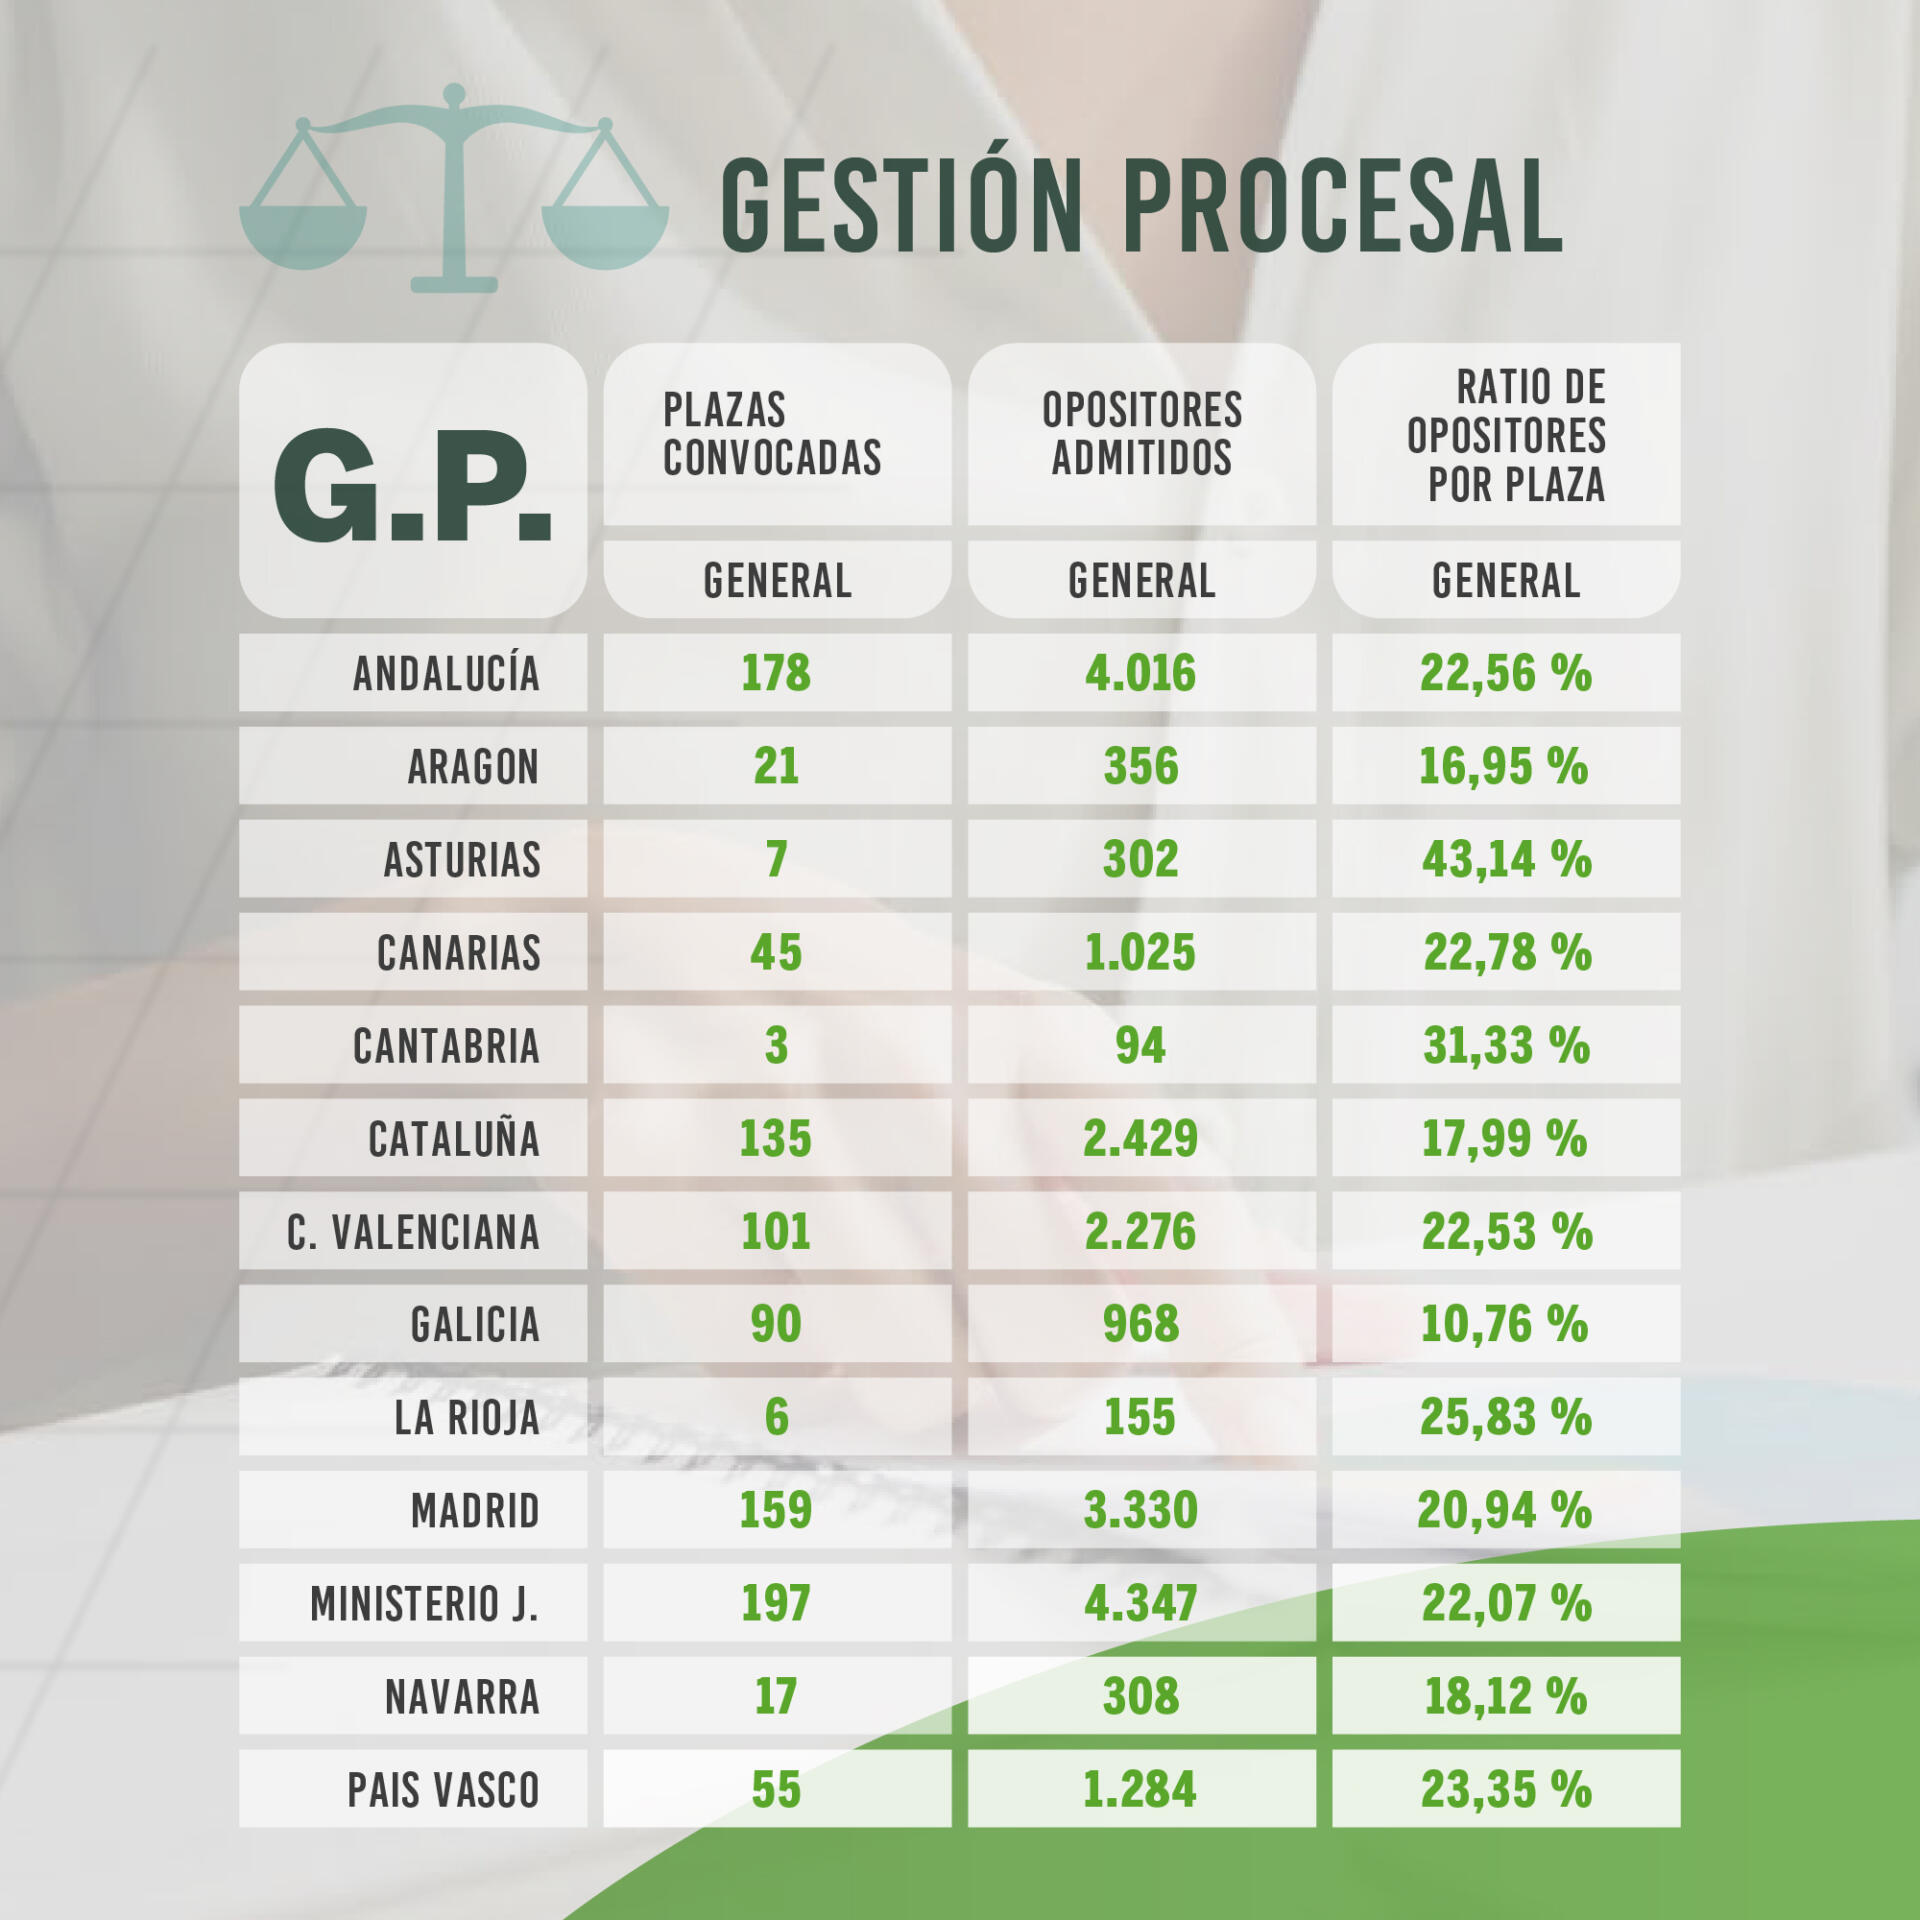 Ratio de opositores por plaza en Justicia gestión procesal